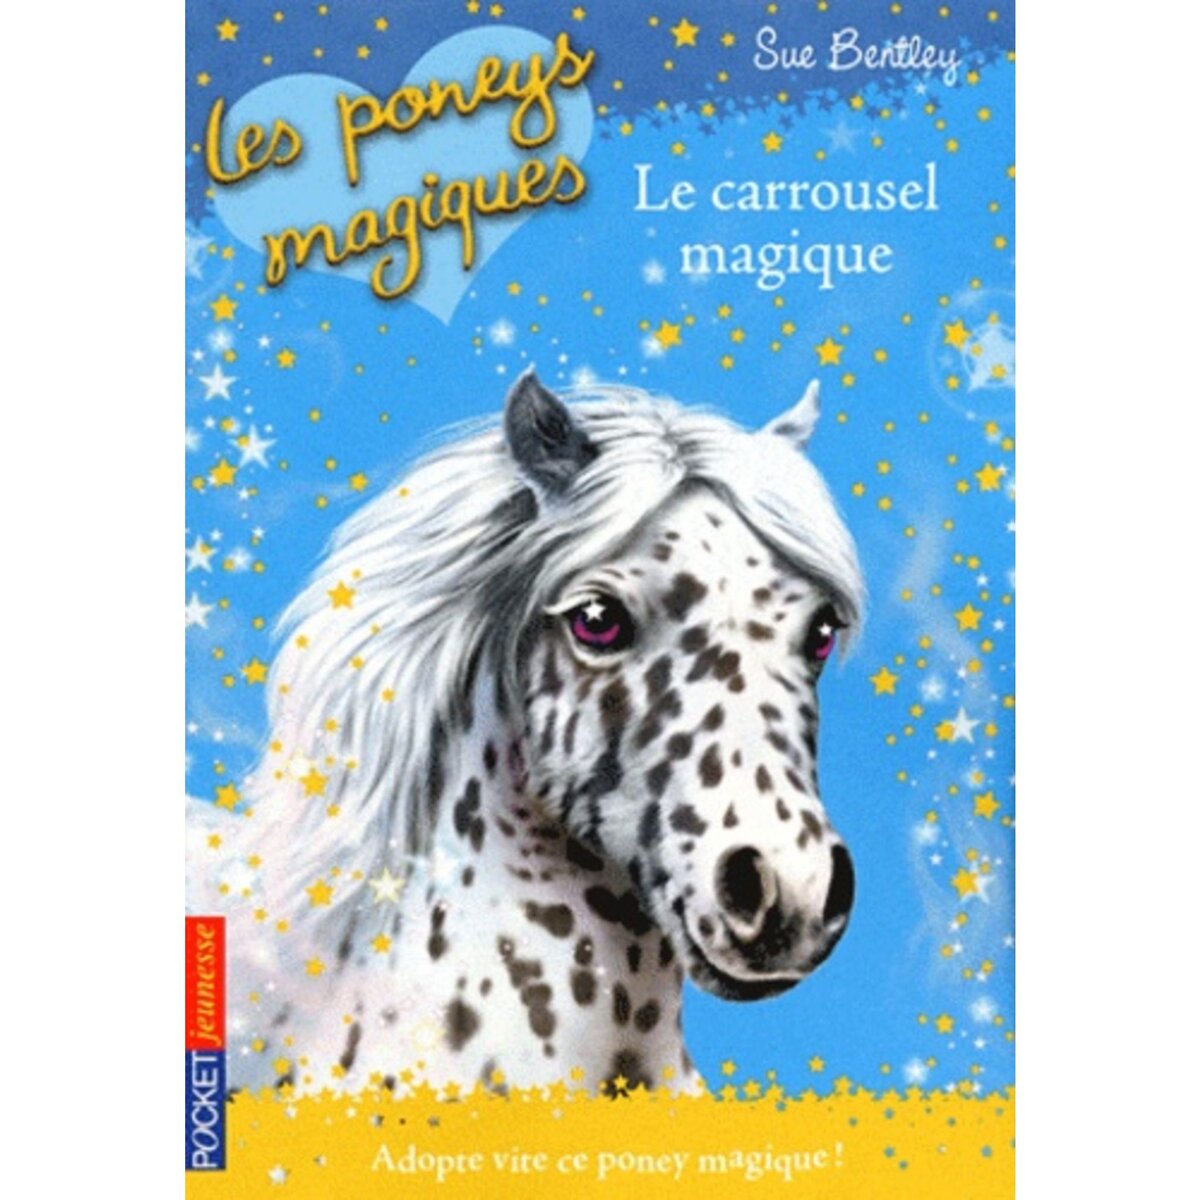  LES PONEYS MAGIQUES TOME 5 : LE CARROUSEL MAGIQUE, Bentley Sue